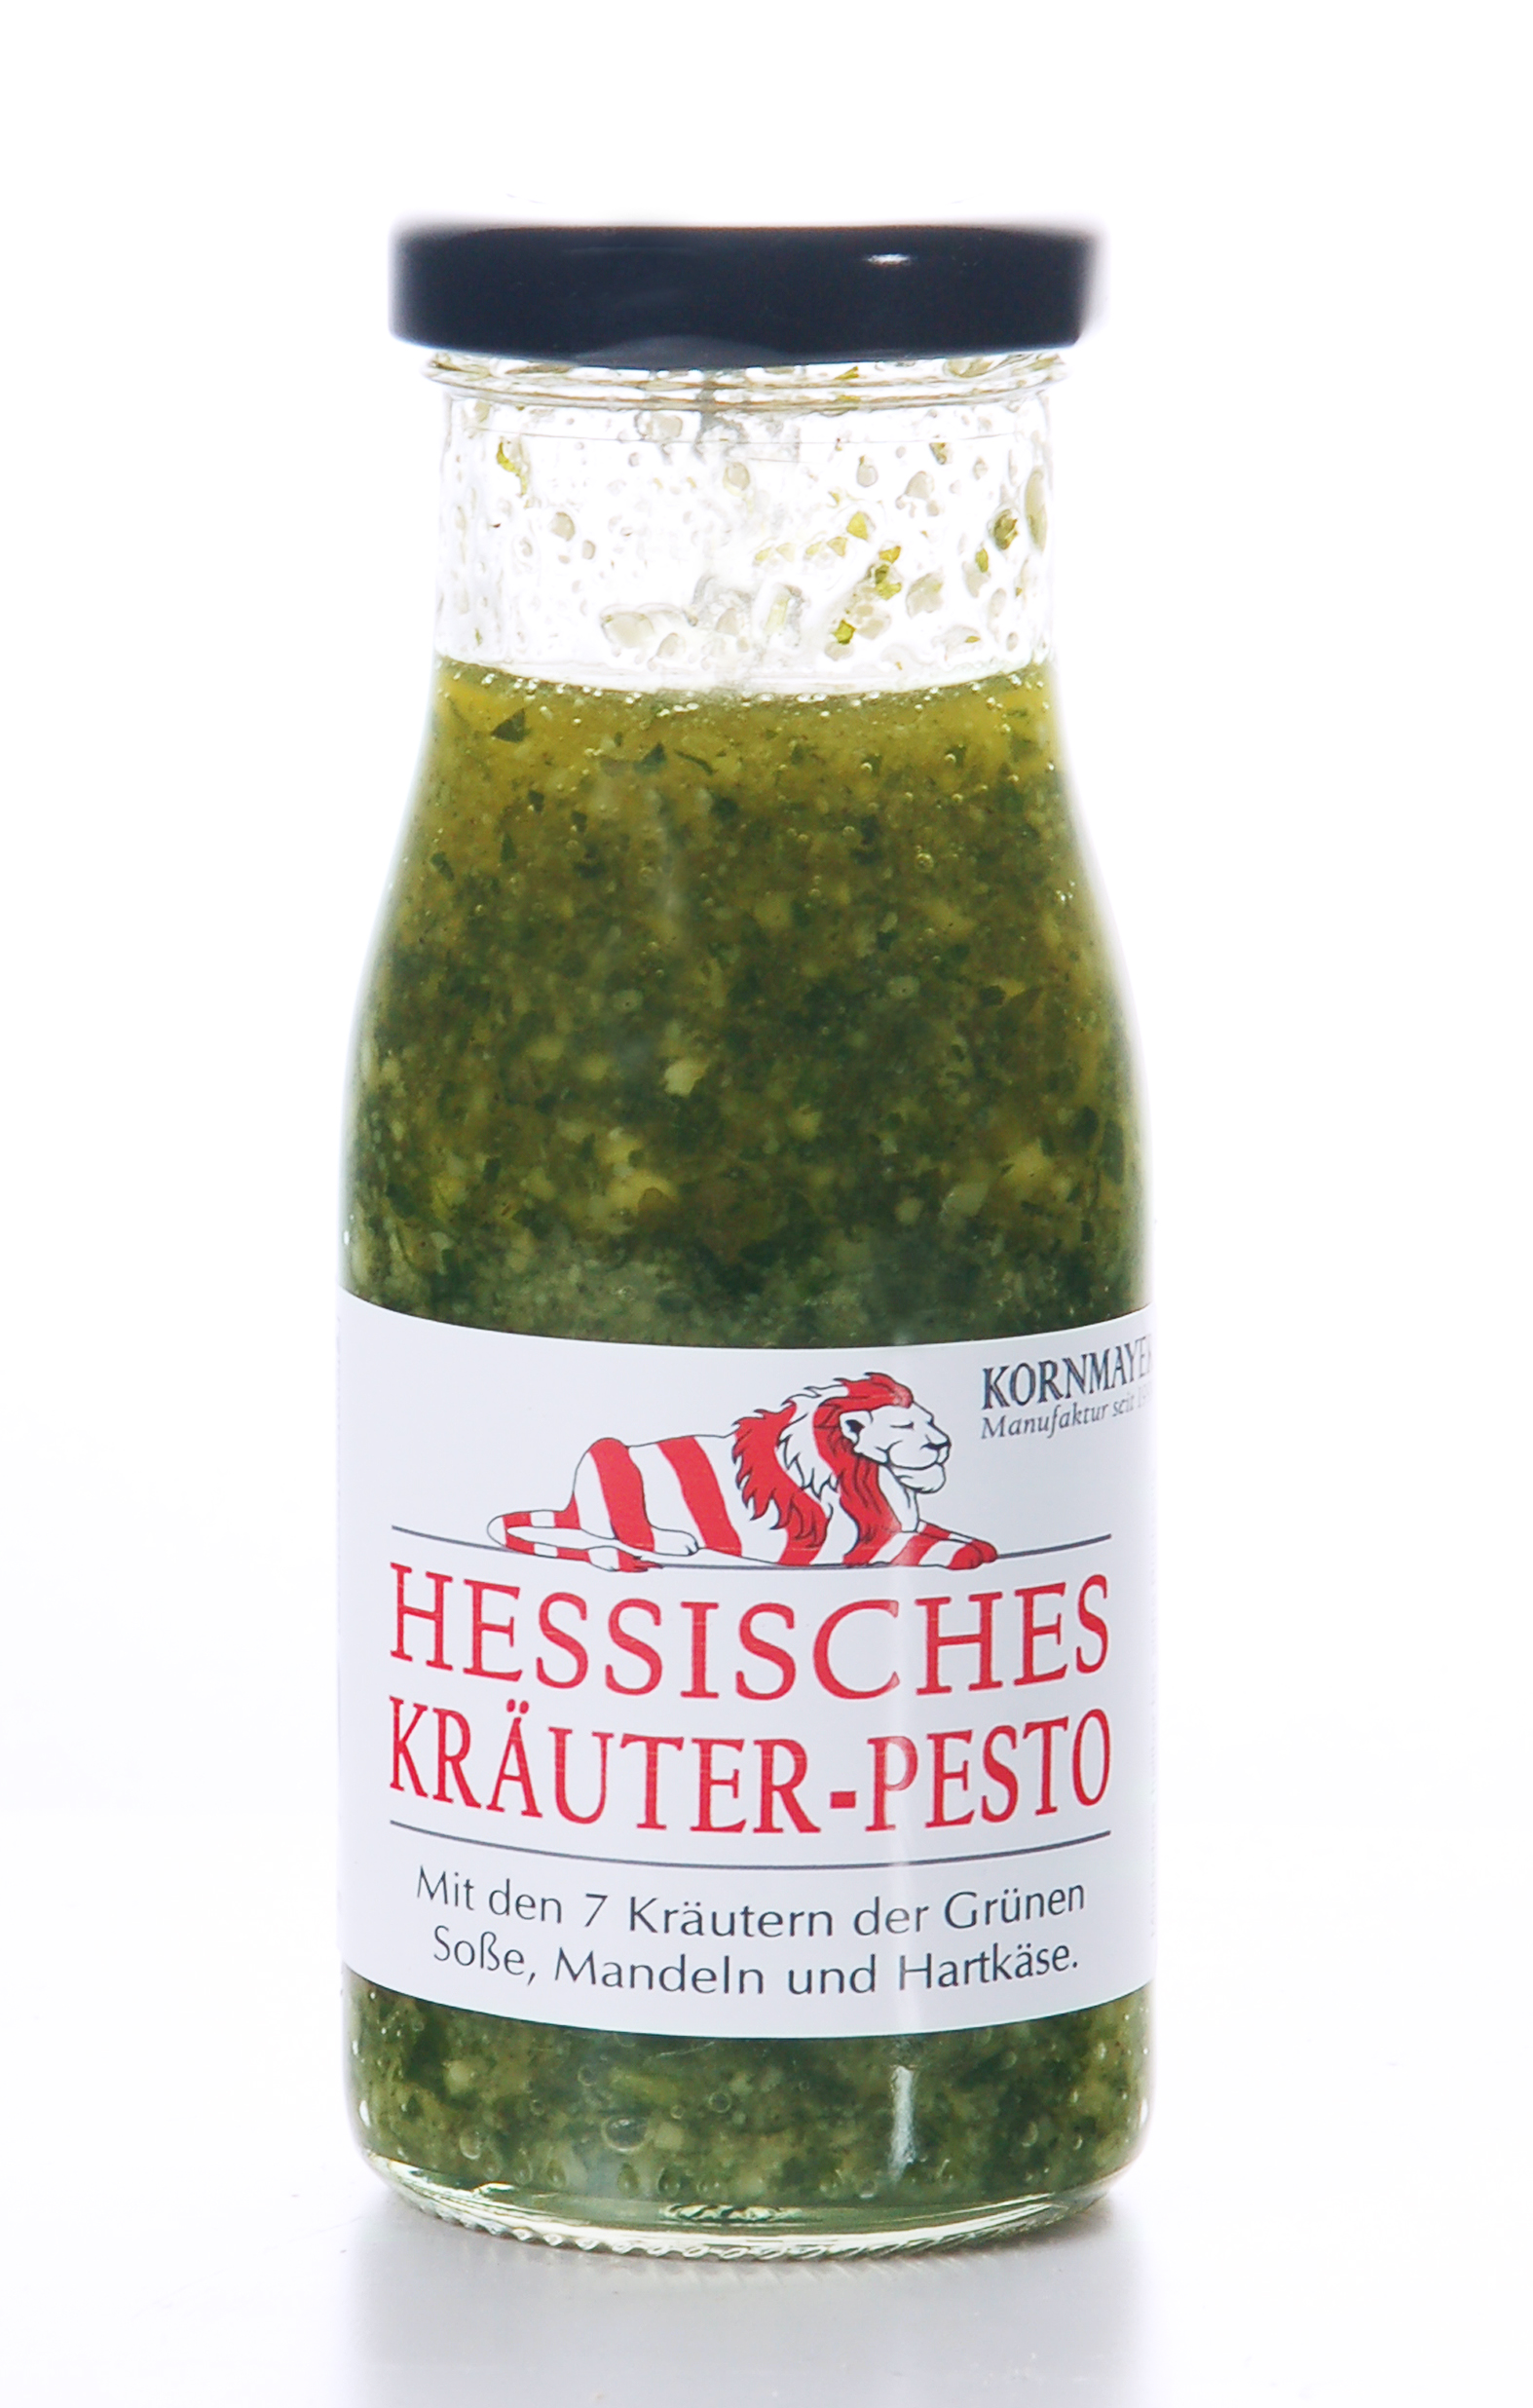 Hessisches Kräuter-Pesto